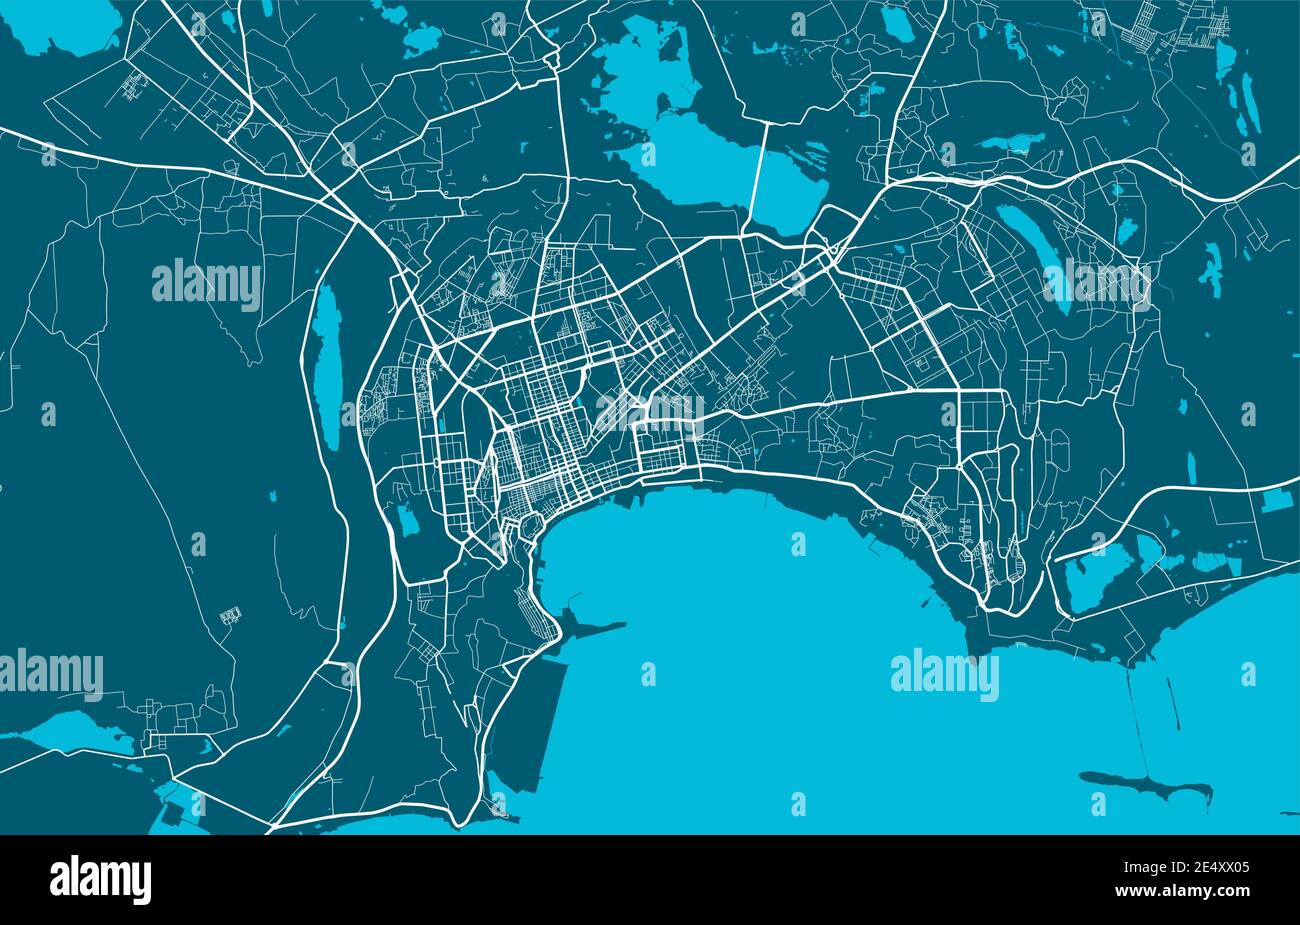 Detaillierte Karte von Baku Stadt Verwaltungsgebiet. Lizenzfreie Vektorgrafik. Stadtbild-Panorama. Dekorative Grafik Touristenkarte von Baku Gebiet. Stock Vektor